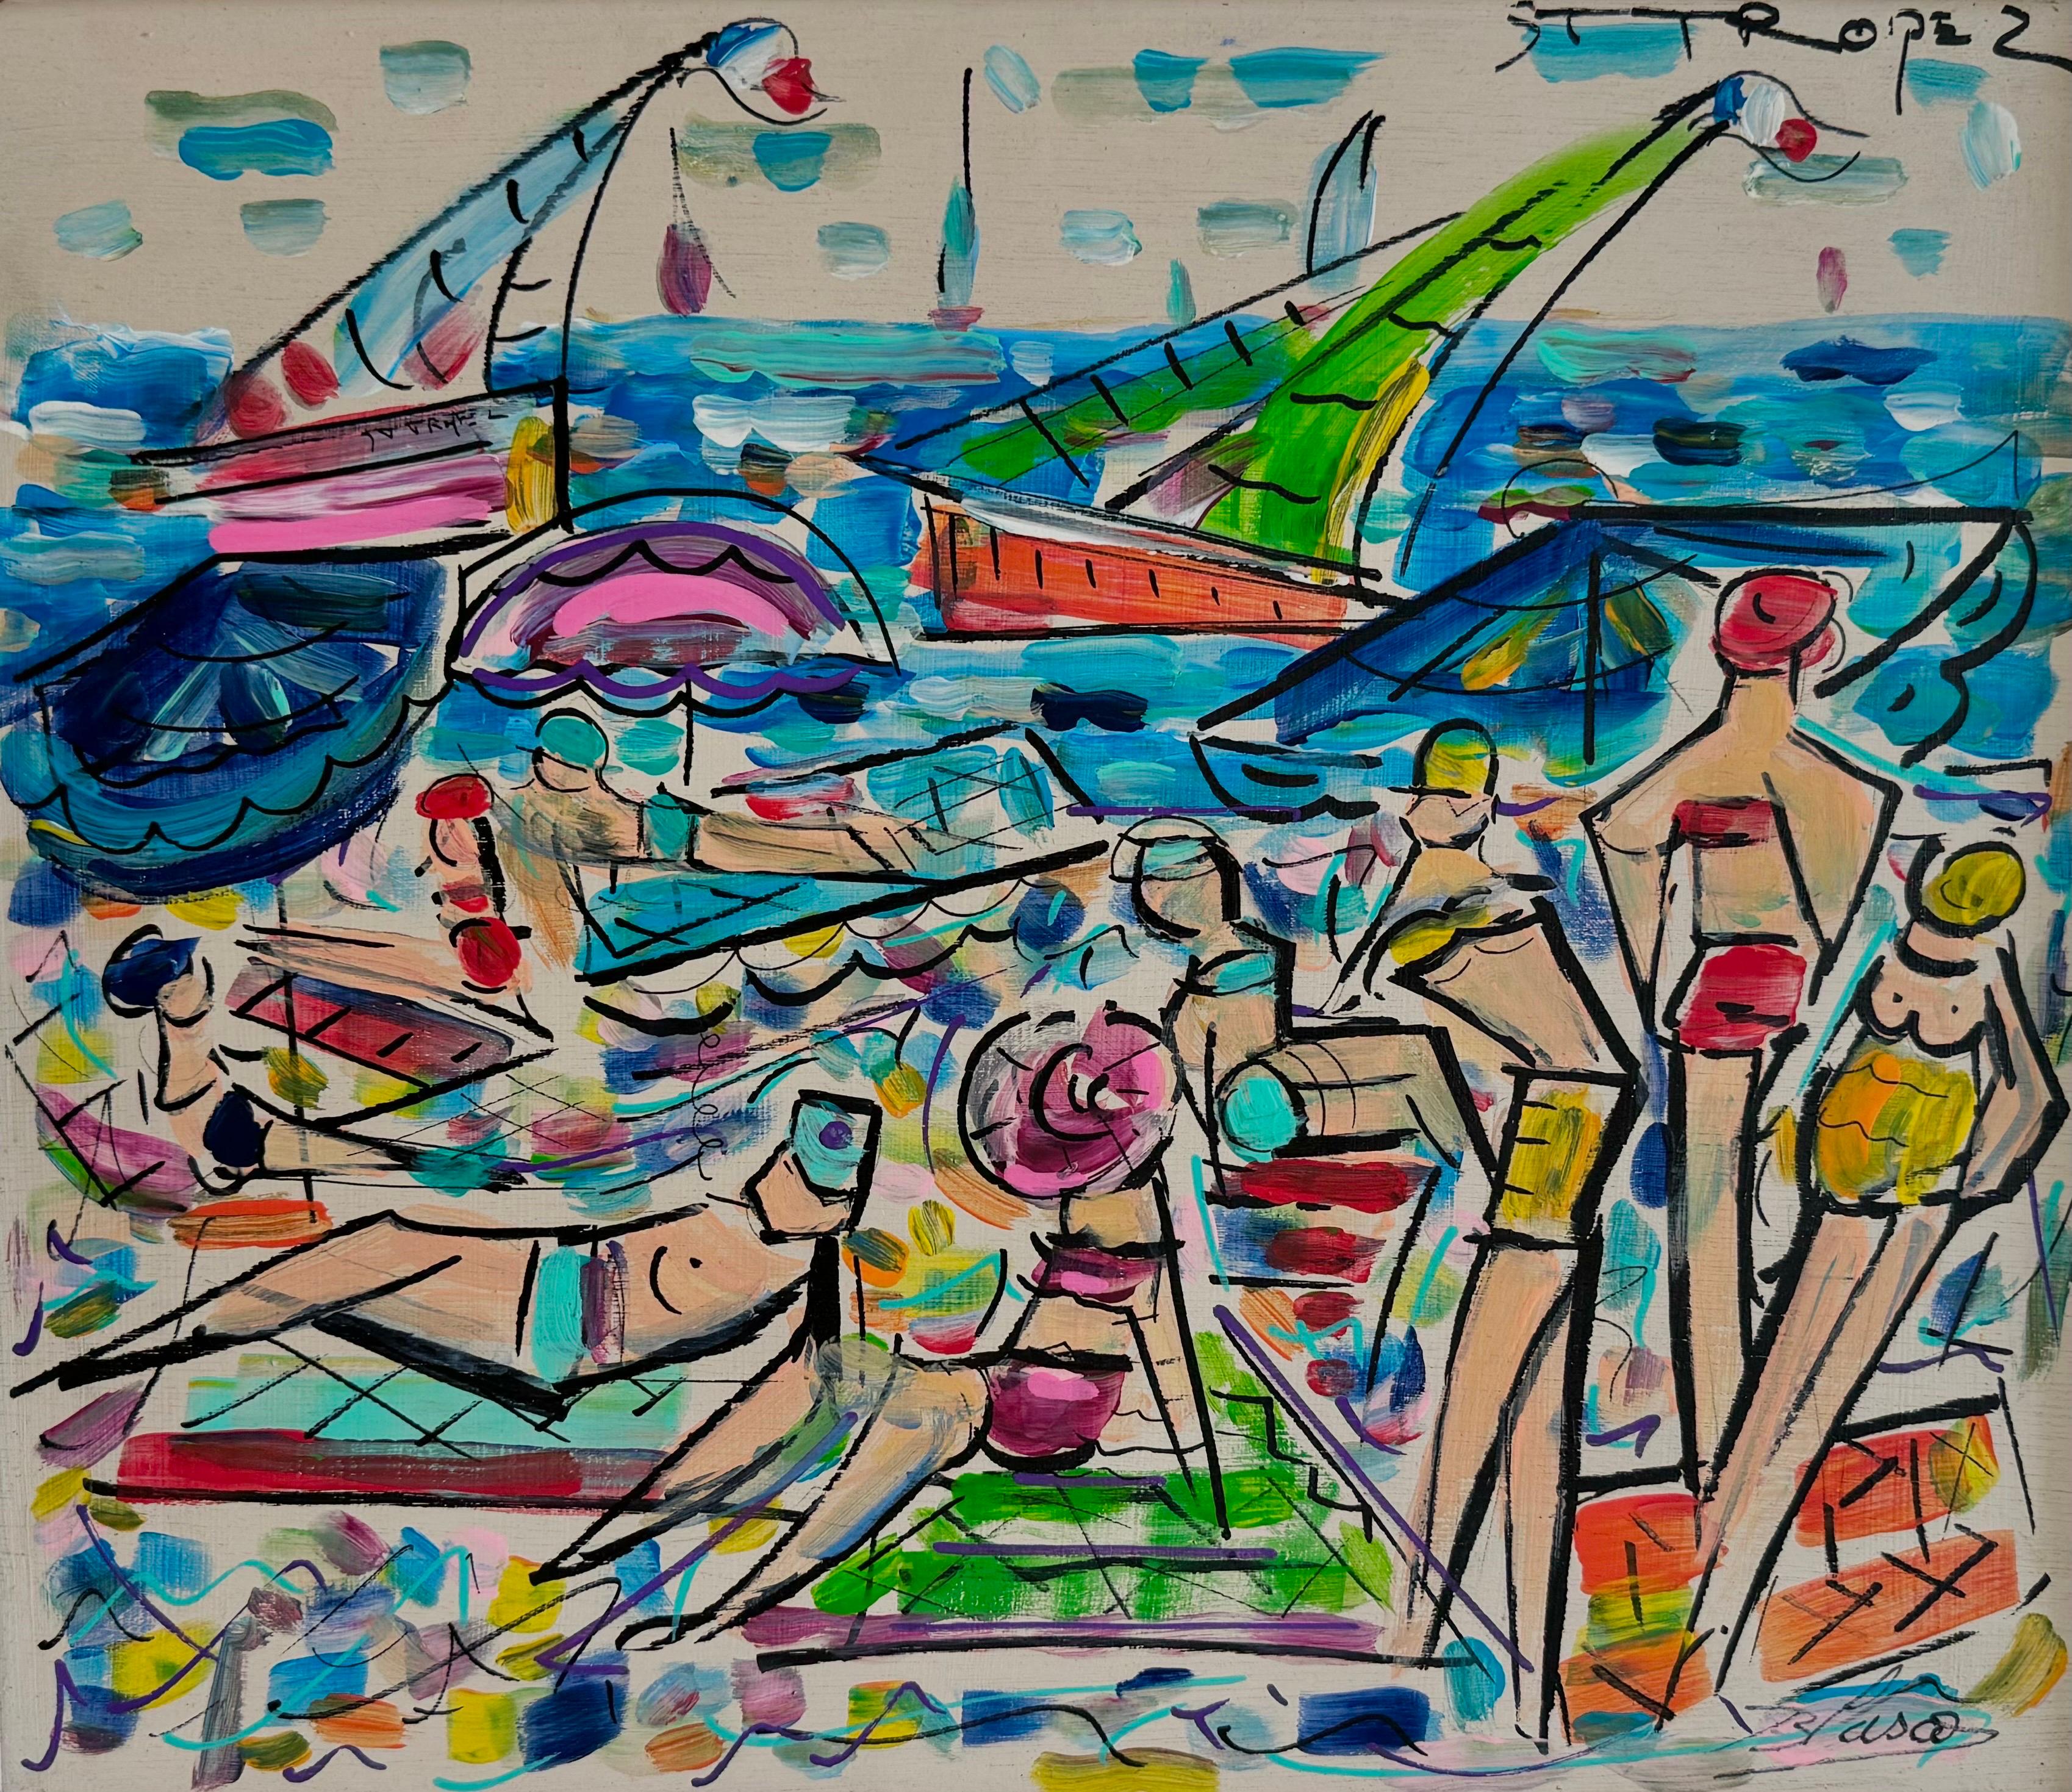 Isidro Blasco Figurative Art – The Beach von Blasco, Contemporary FIgurative French Painting on Board